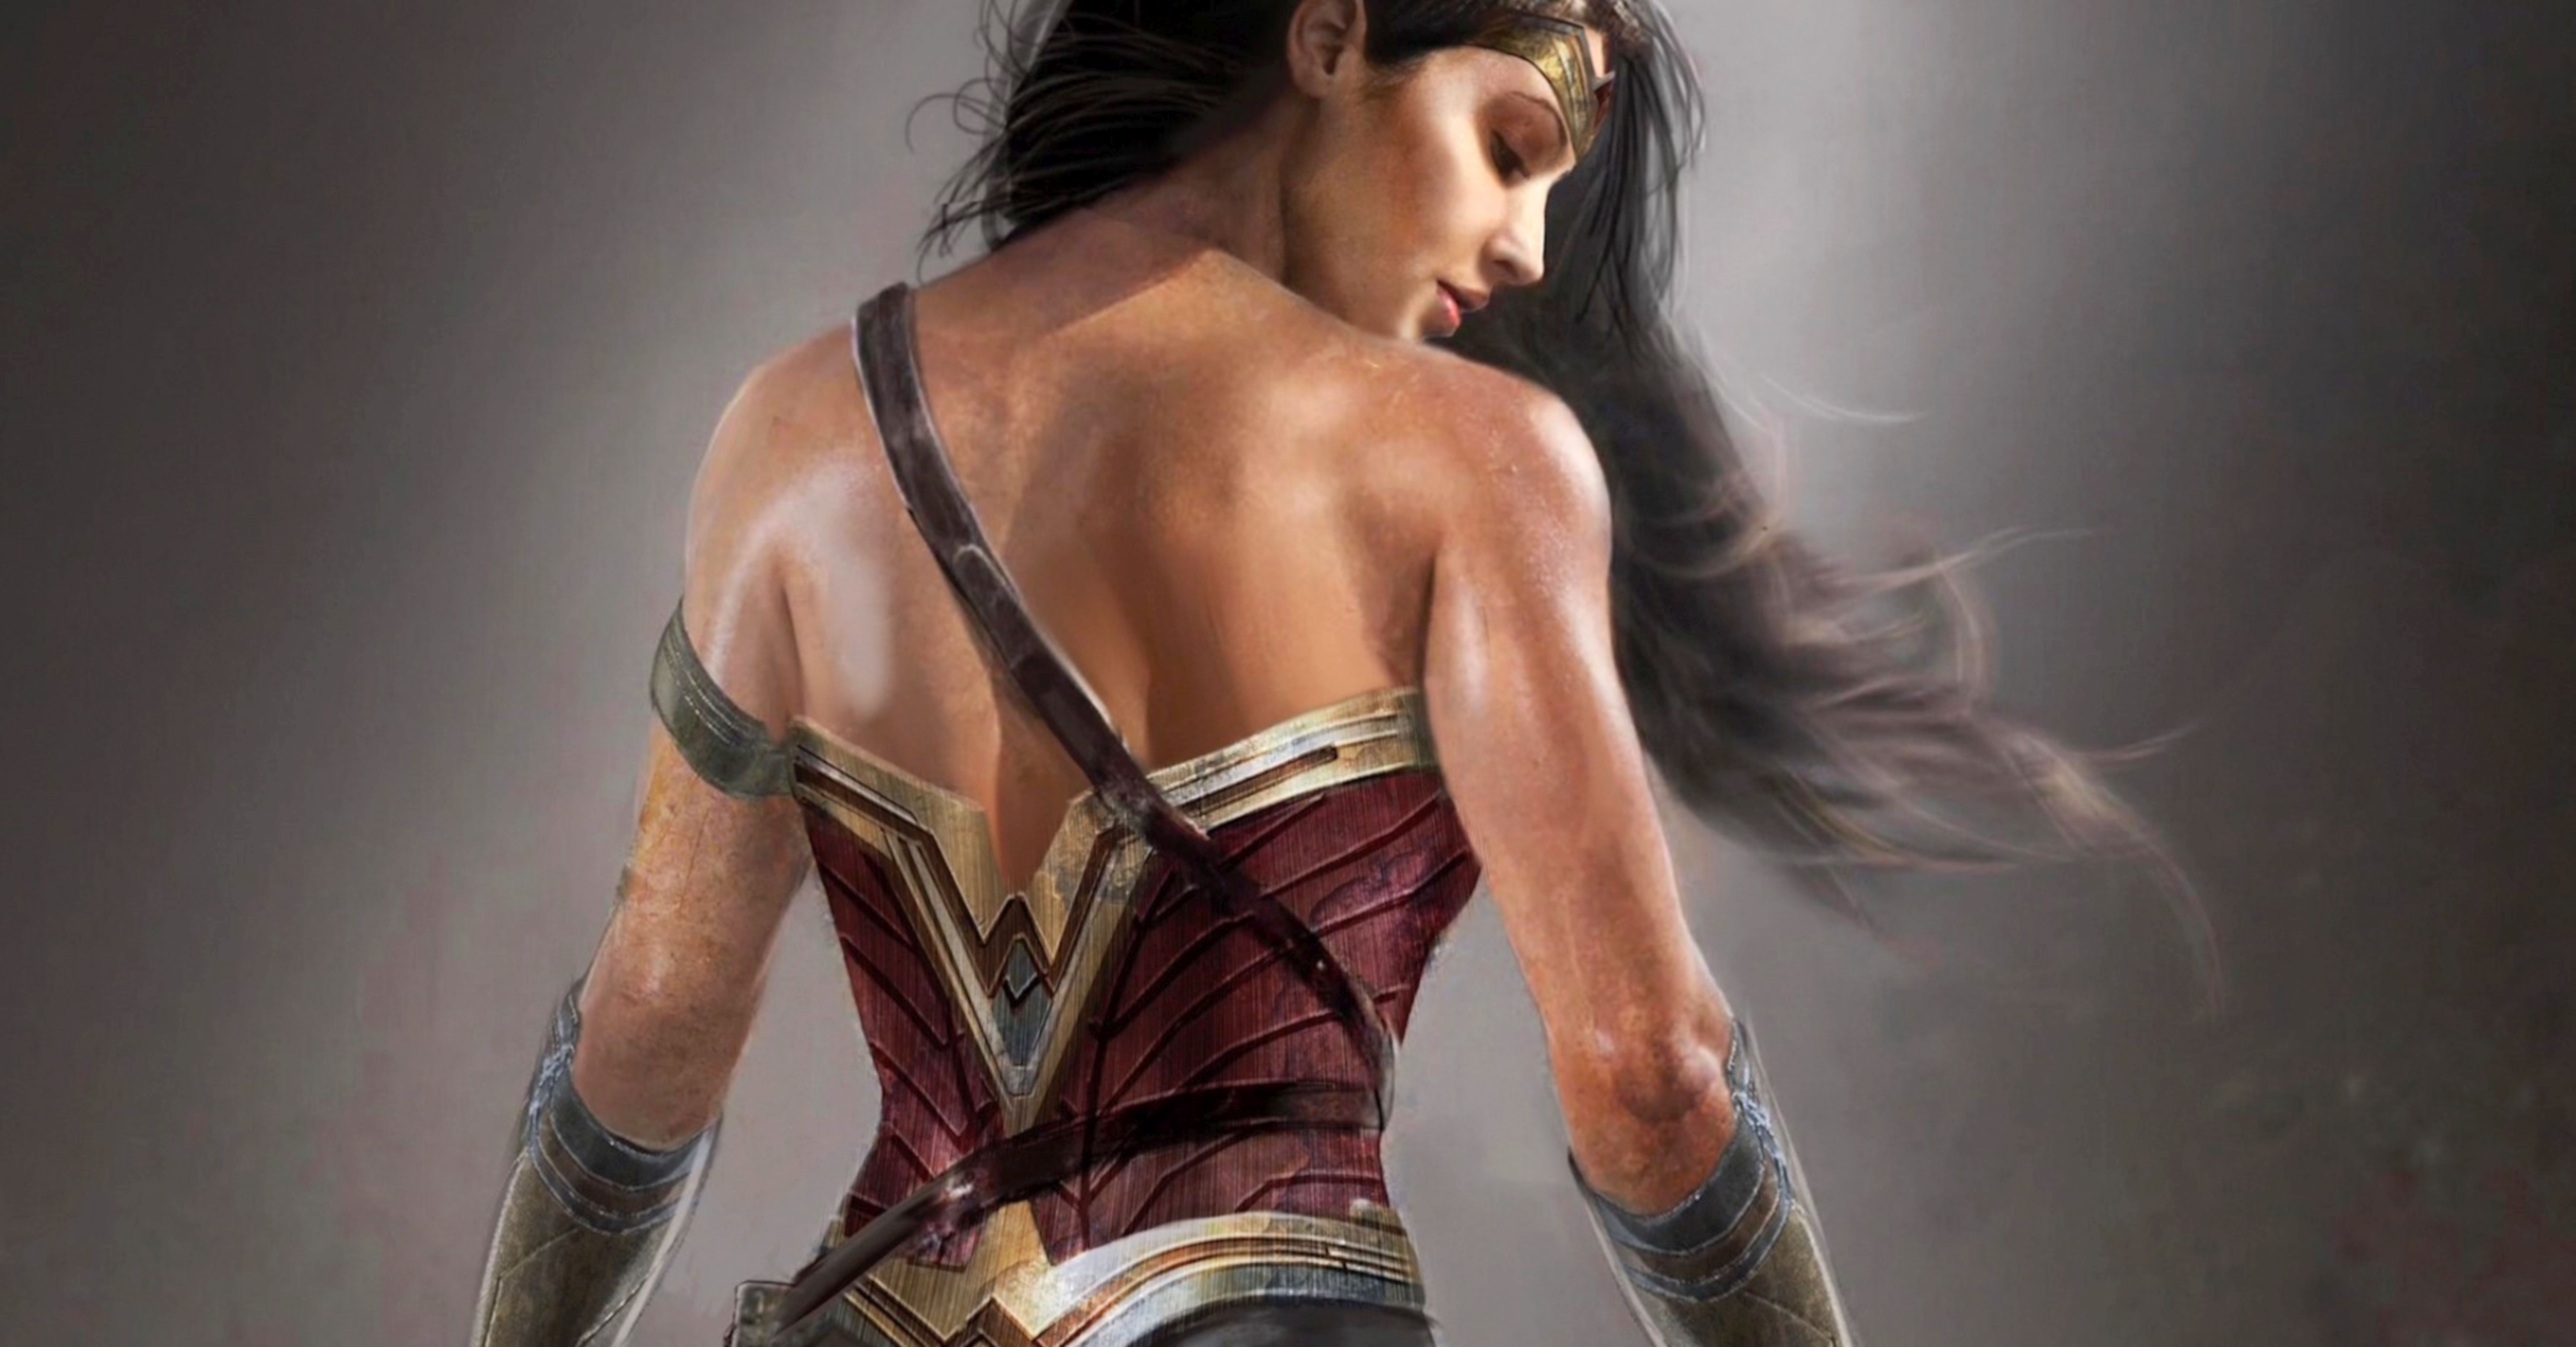 Wonder Woman Gal Gadot Back - 7052x3688 Wallpaper 